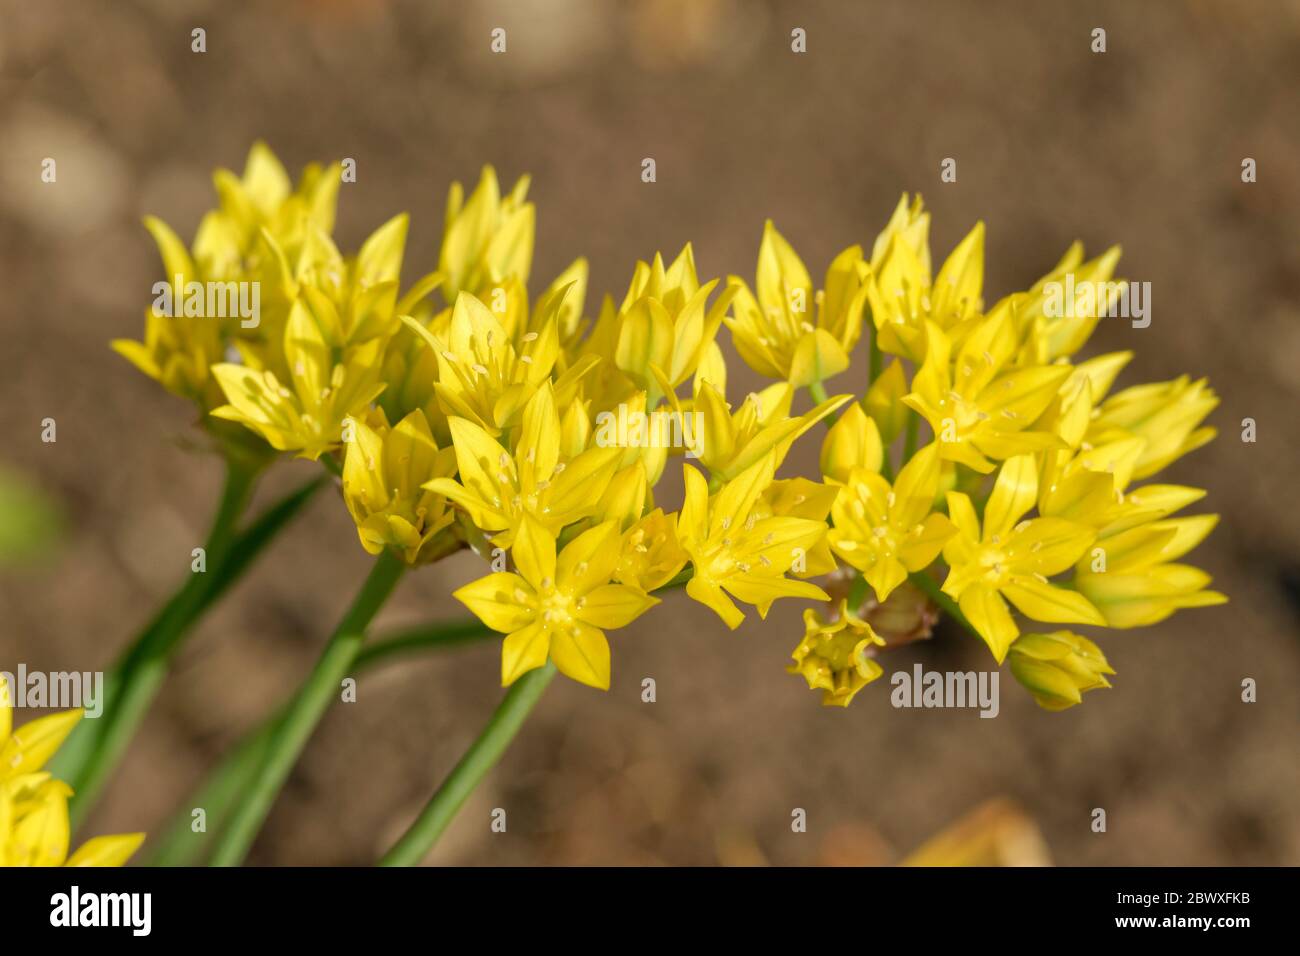 Allium Moly Blüten, manchmal auch Lily Leek genannt, gelber Knoblauch oder goldener Knoblauch. Stockfoto